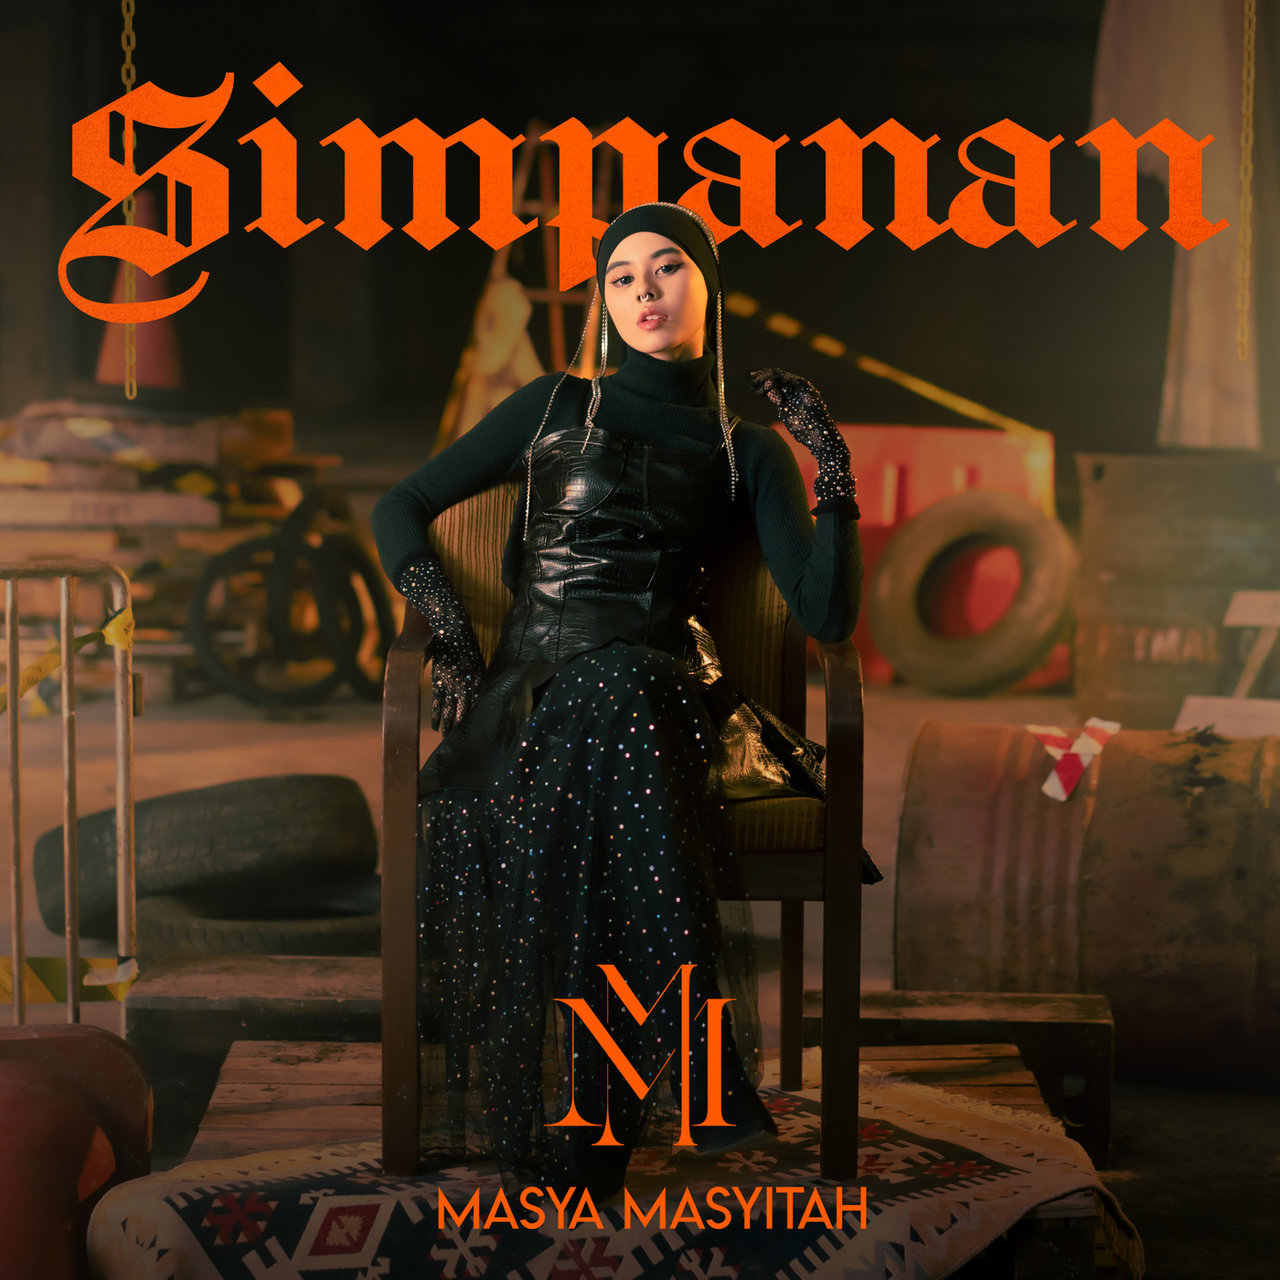 Masya Masyitah Simpanan cover artwork